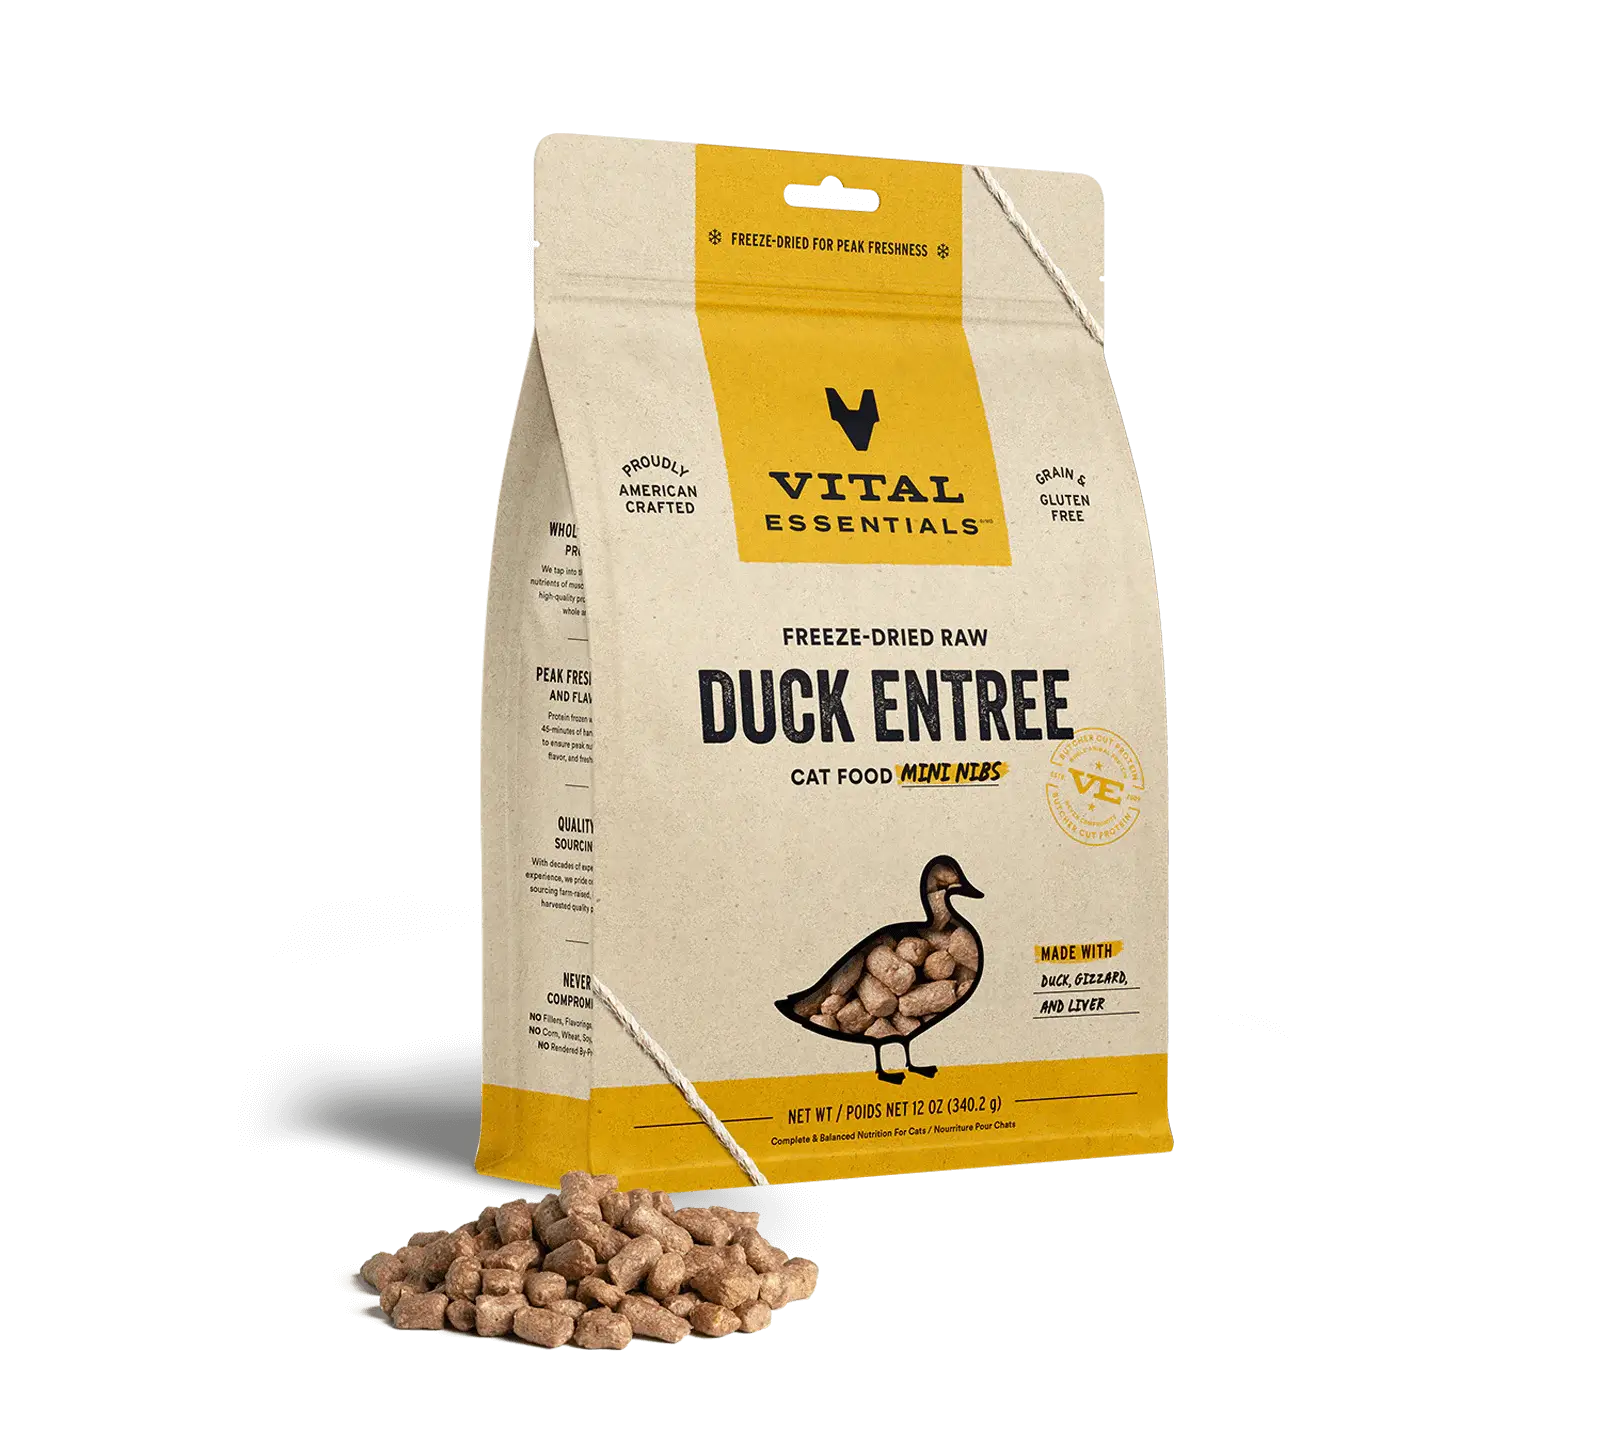 Vital Essentials (VE) - Mini Nibs - Freeze-Dried Duck Entree (Cat Food)